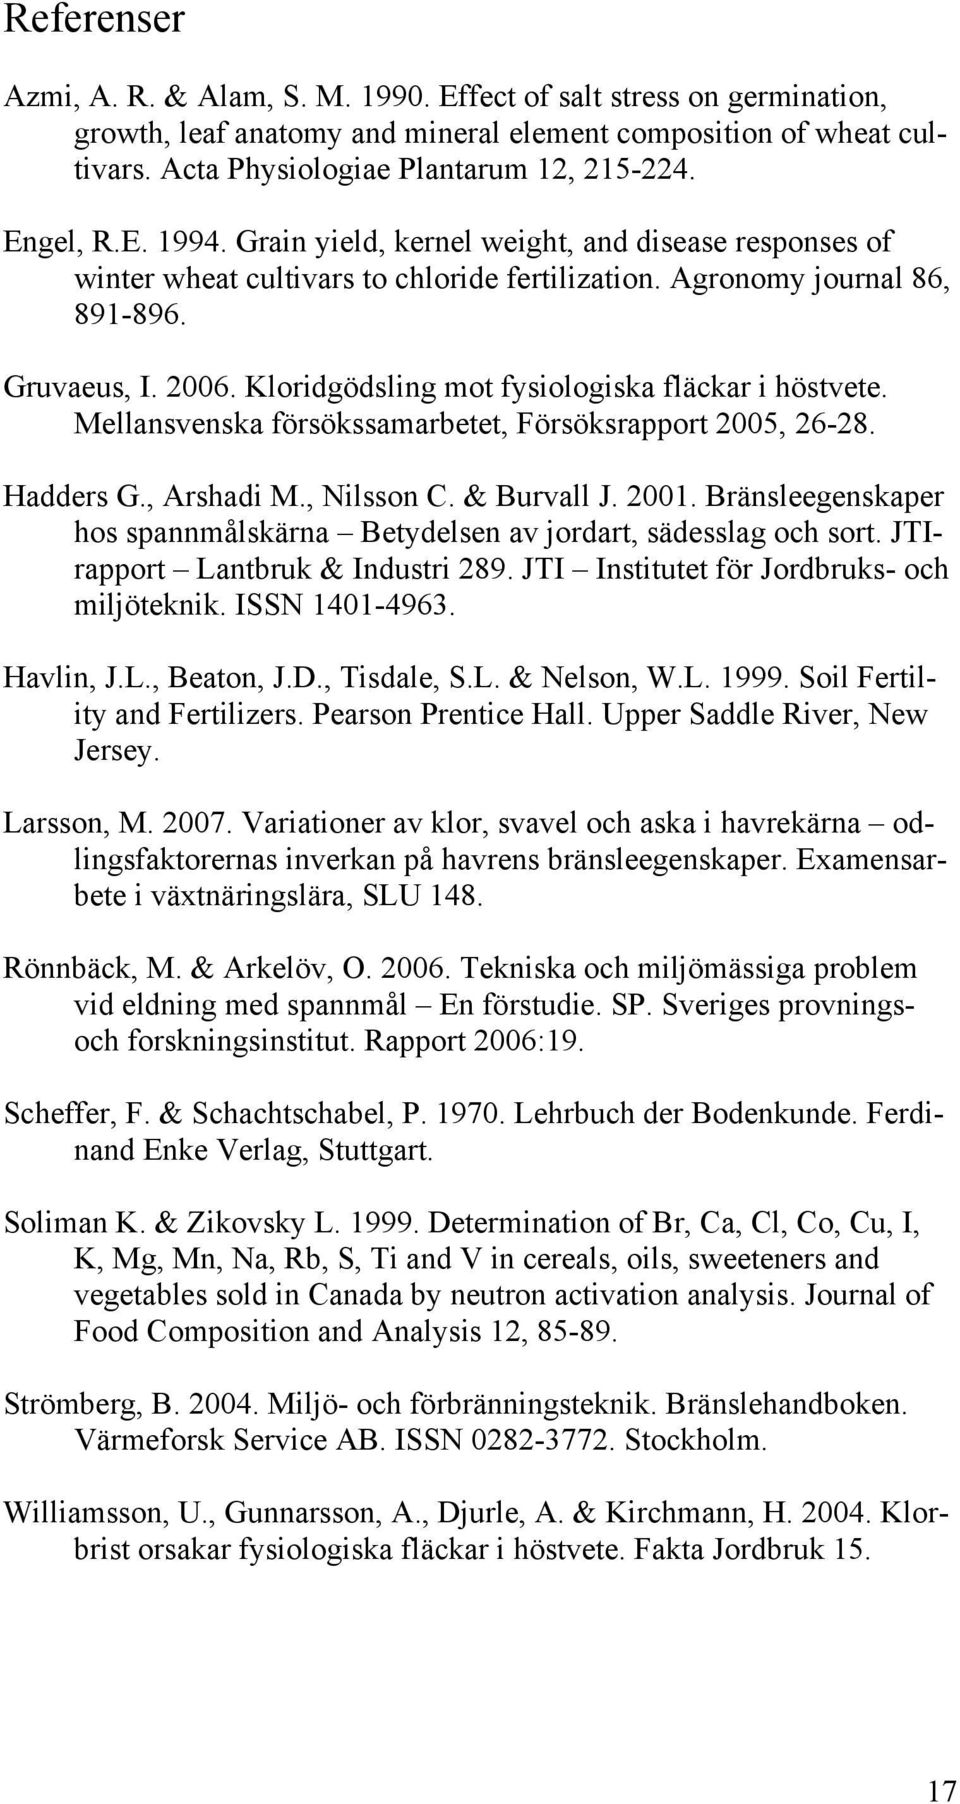 Kloridgödsling mot fysiologiska fläckar i höstvete. Mellansvenska försökssamarbetet, Försöksrapport 2005, 26-28. Hadders G., Arshadi M., Nilsson C. & Burvall J. 2001.